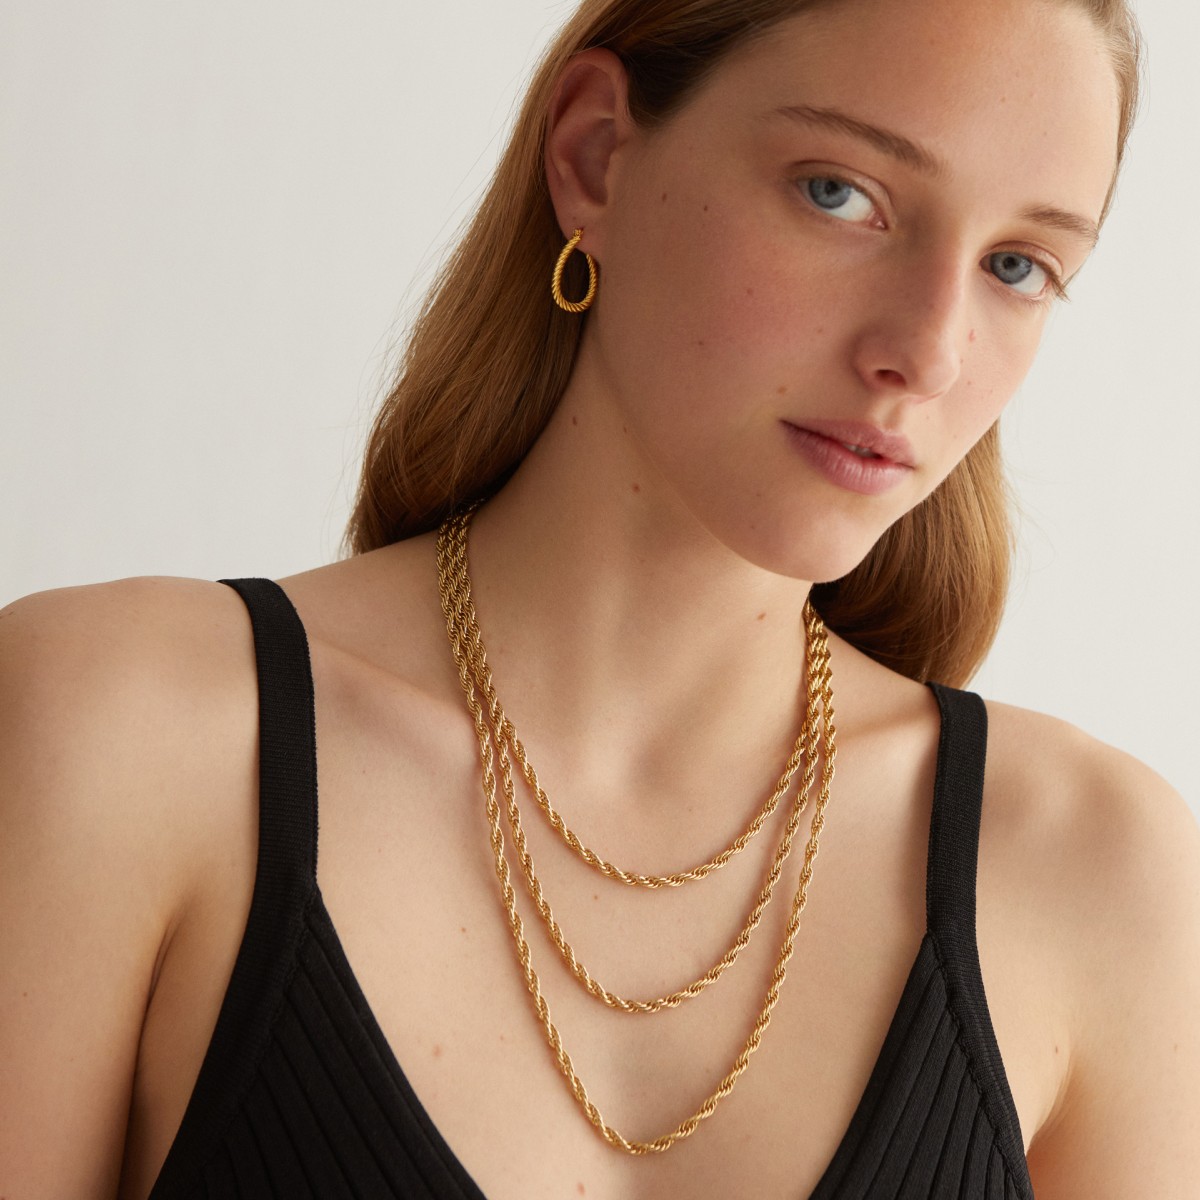 Marguerite Chain Large - Halsketten - 24k vergoldet